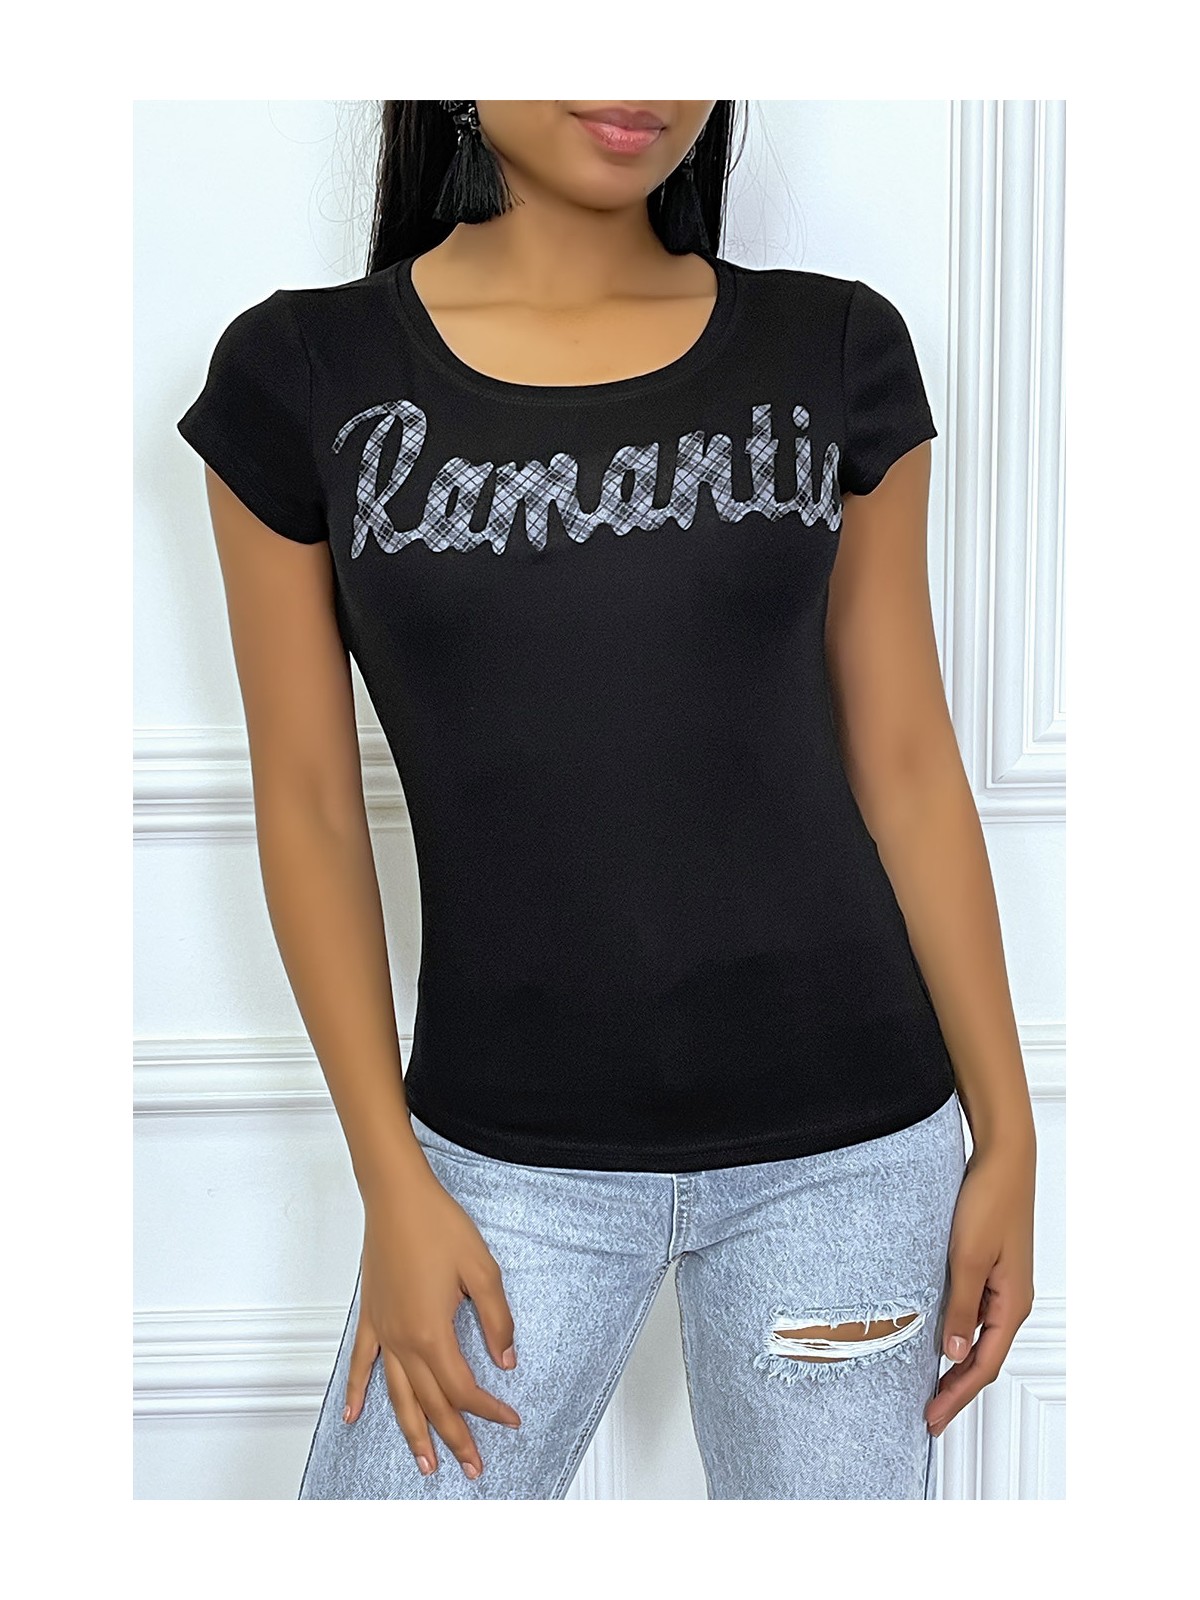 T-shirt noir à col rond et inscription "Romantic" - 1